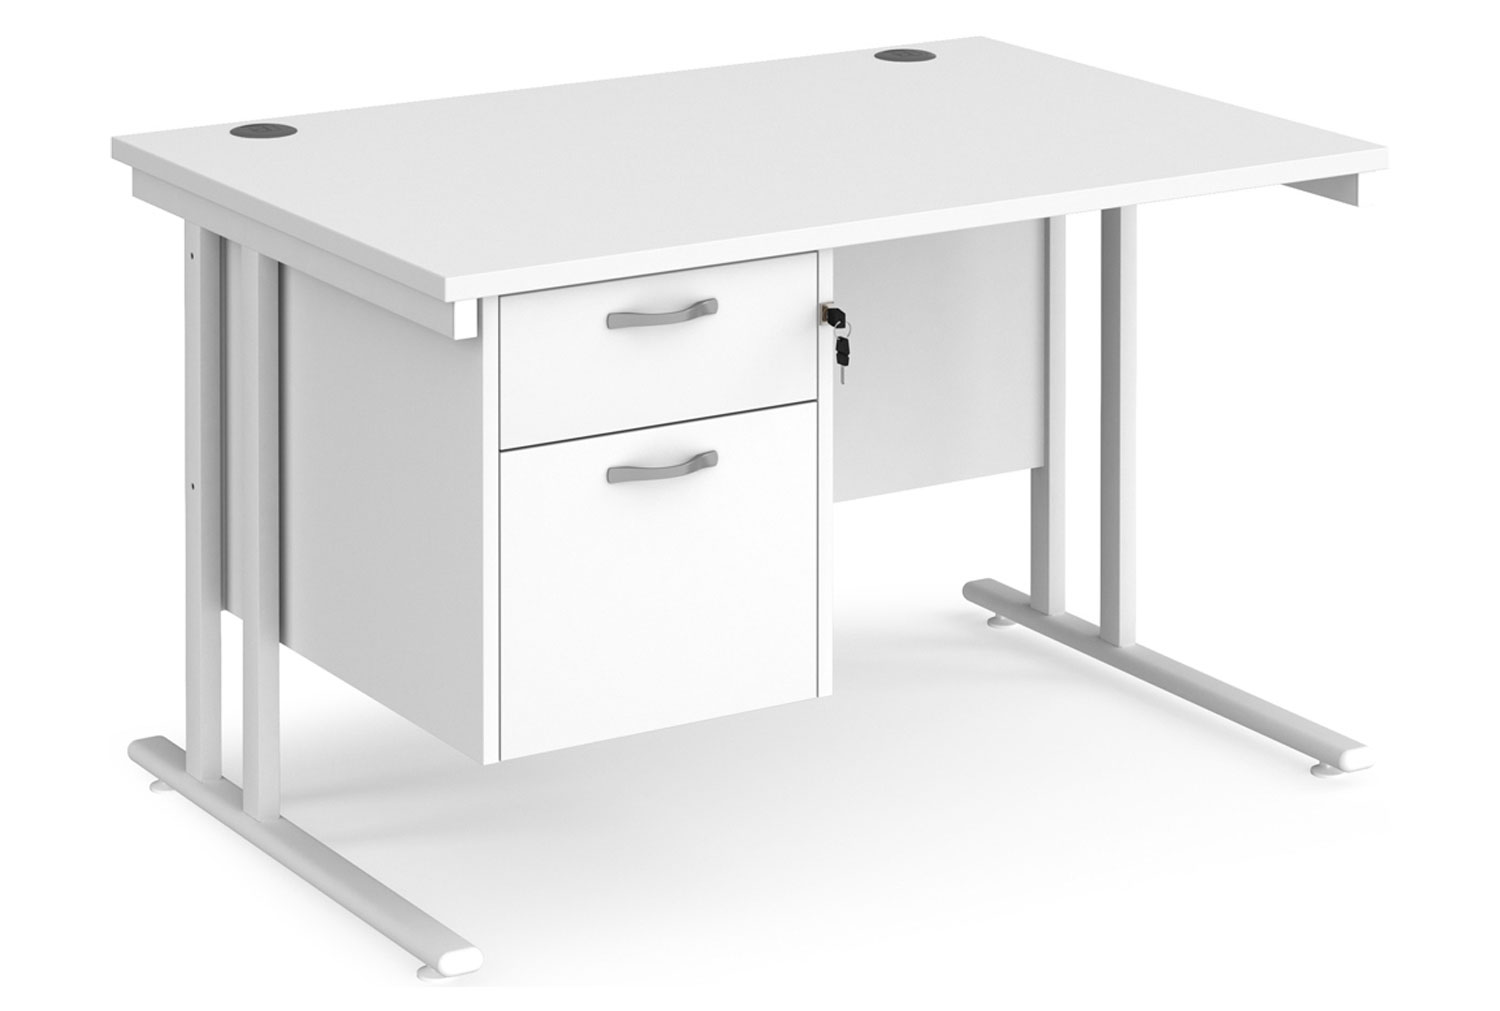 Value Line Deluxe C-Leg Rectangular Office Desk 2 Drawers (White Legs), 120wx80dx73h (cm), White